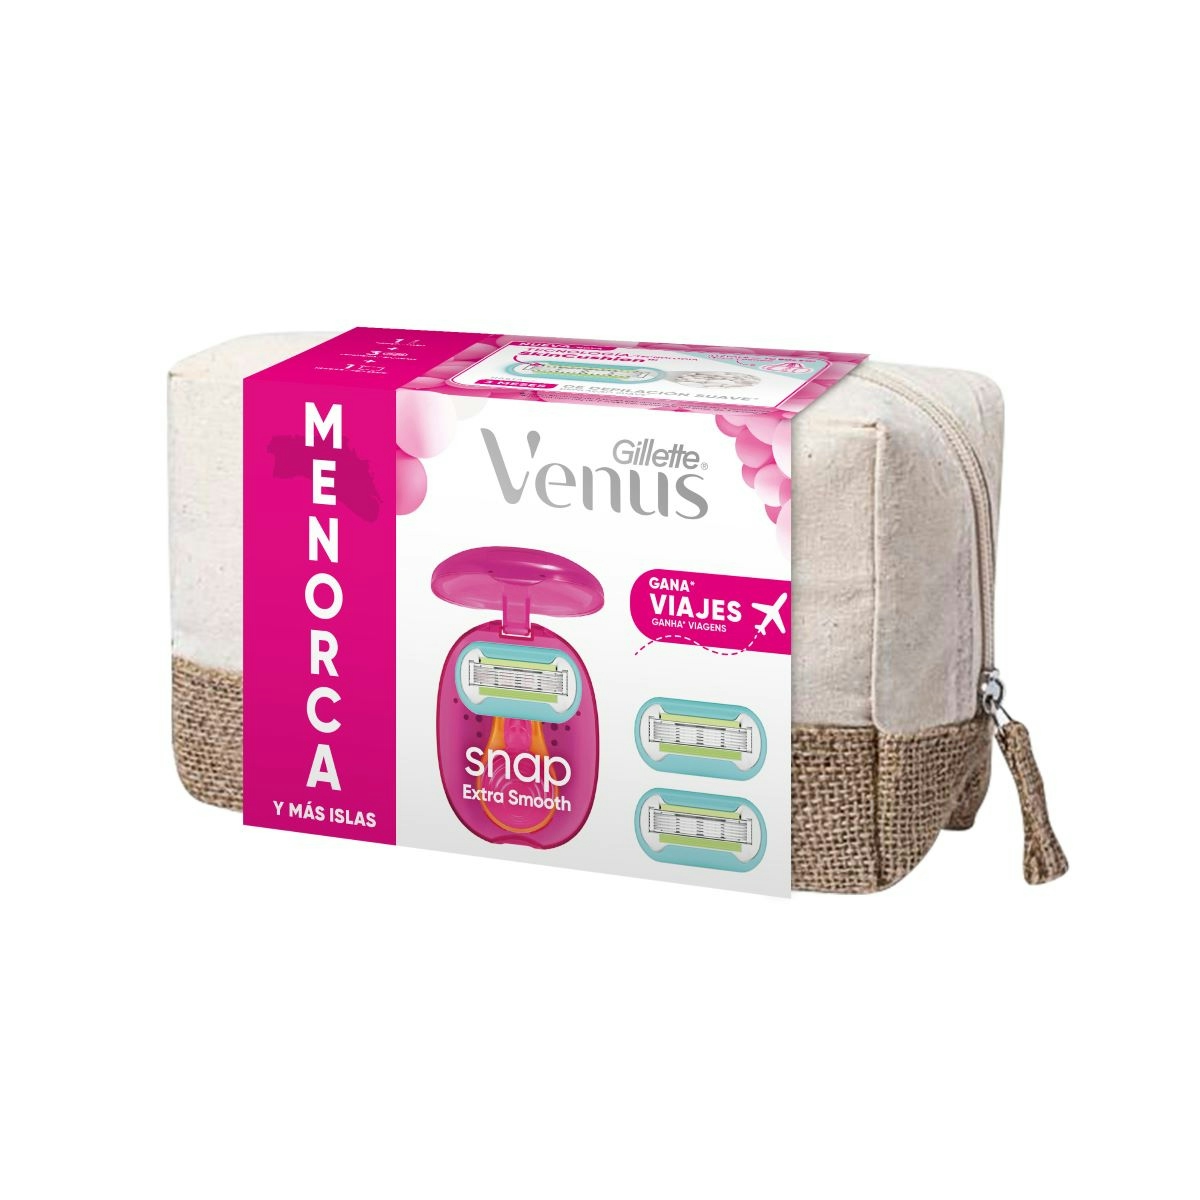 Pack Venus Menorca (Maquinilla +3 Cargadores)